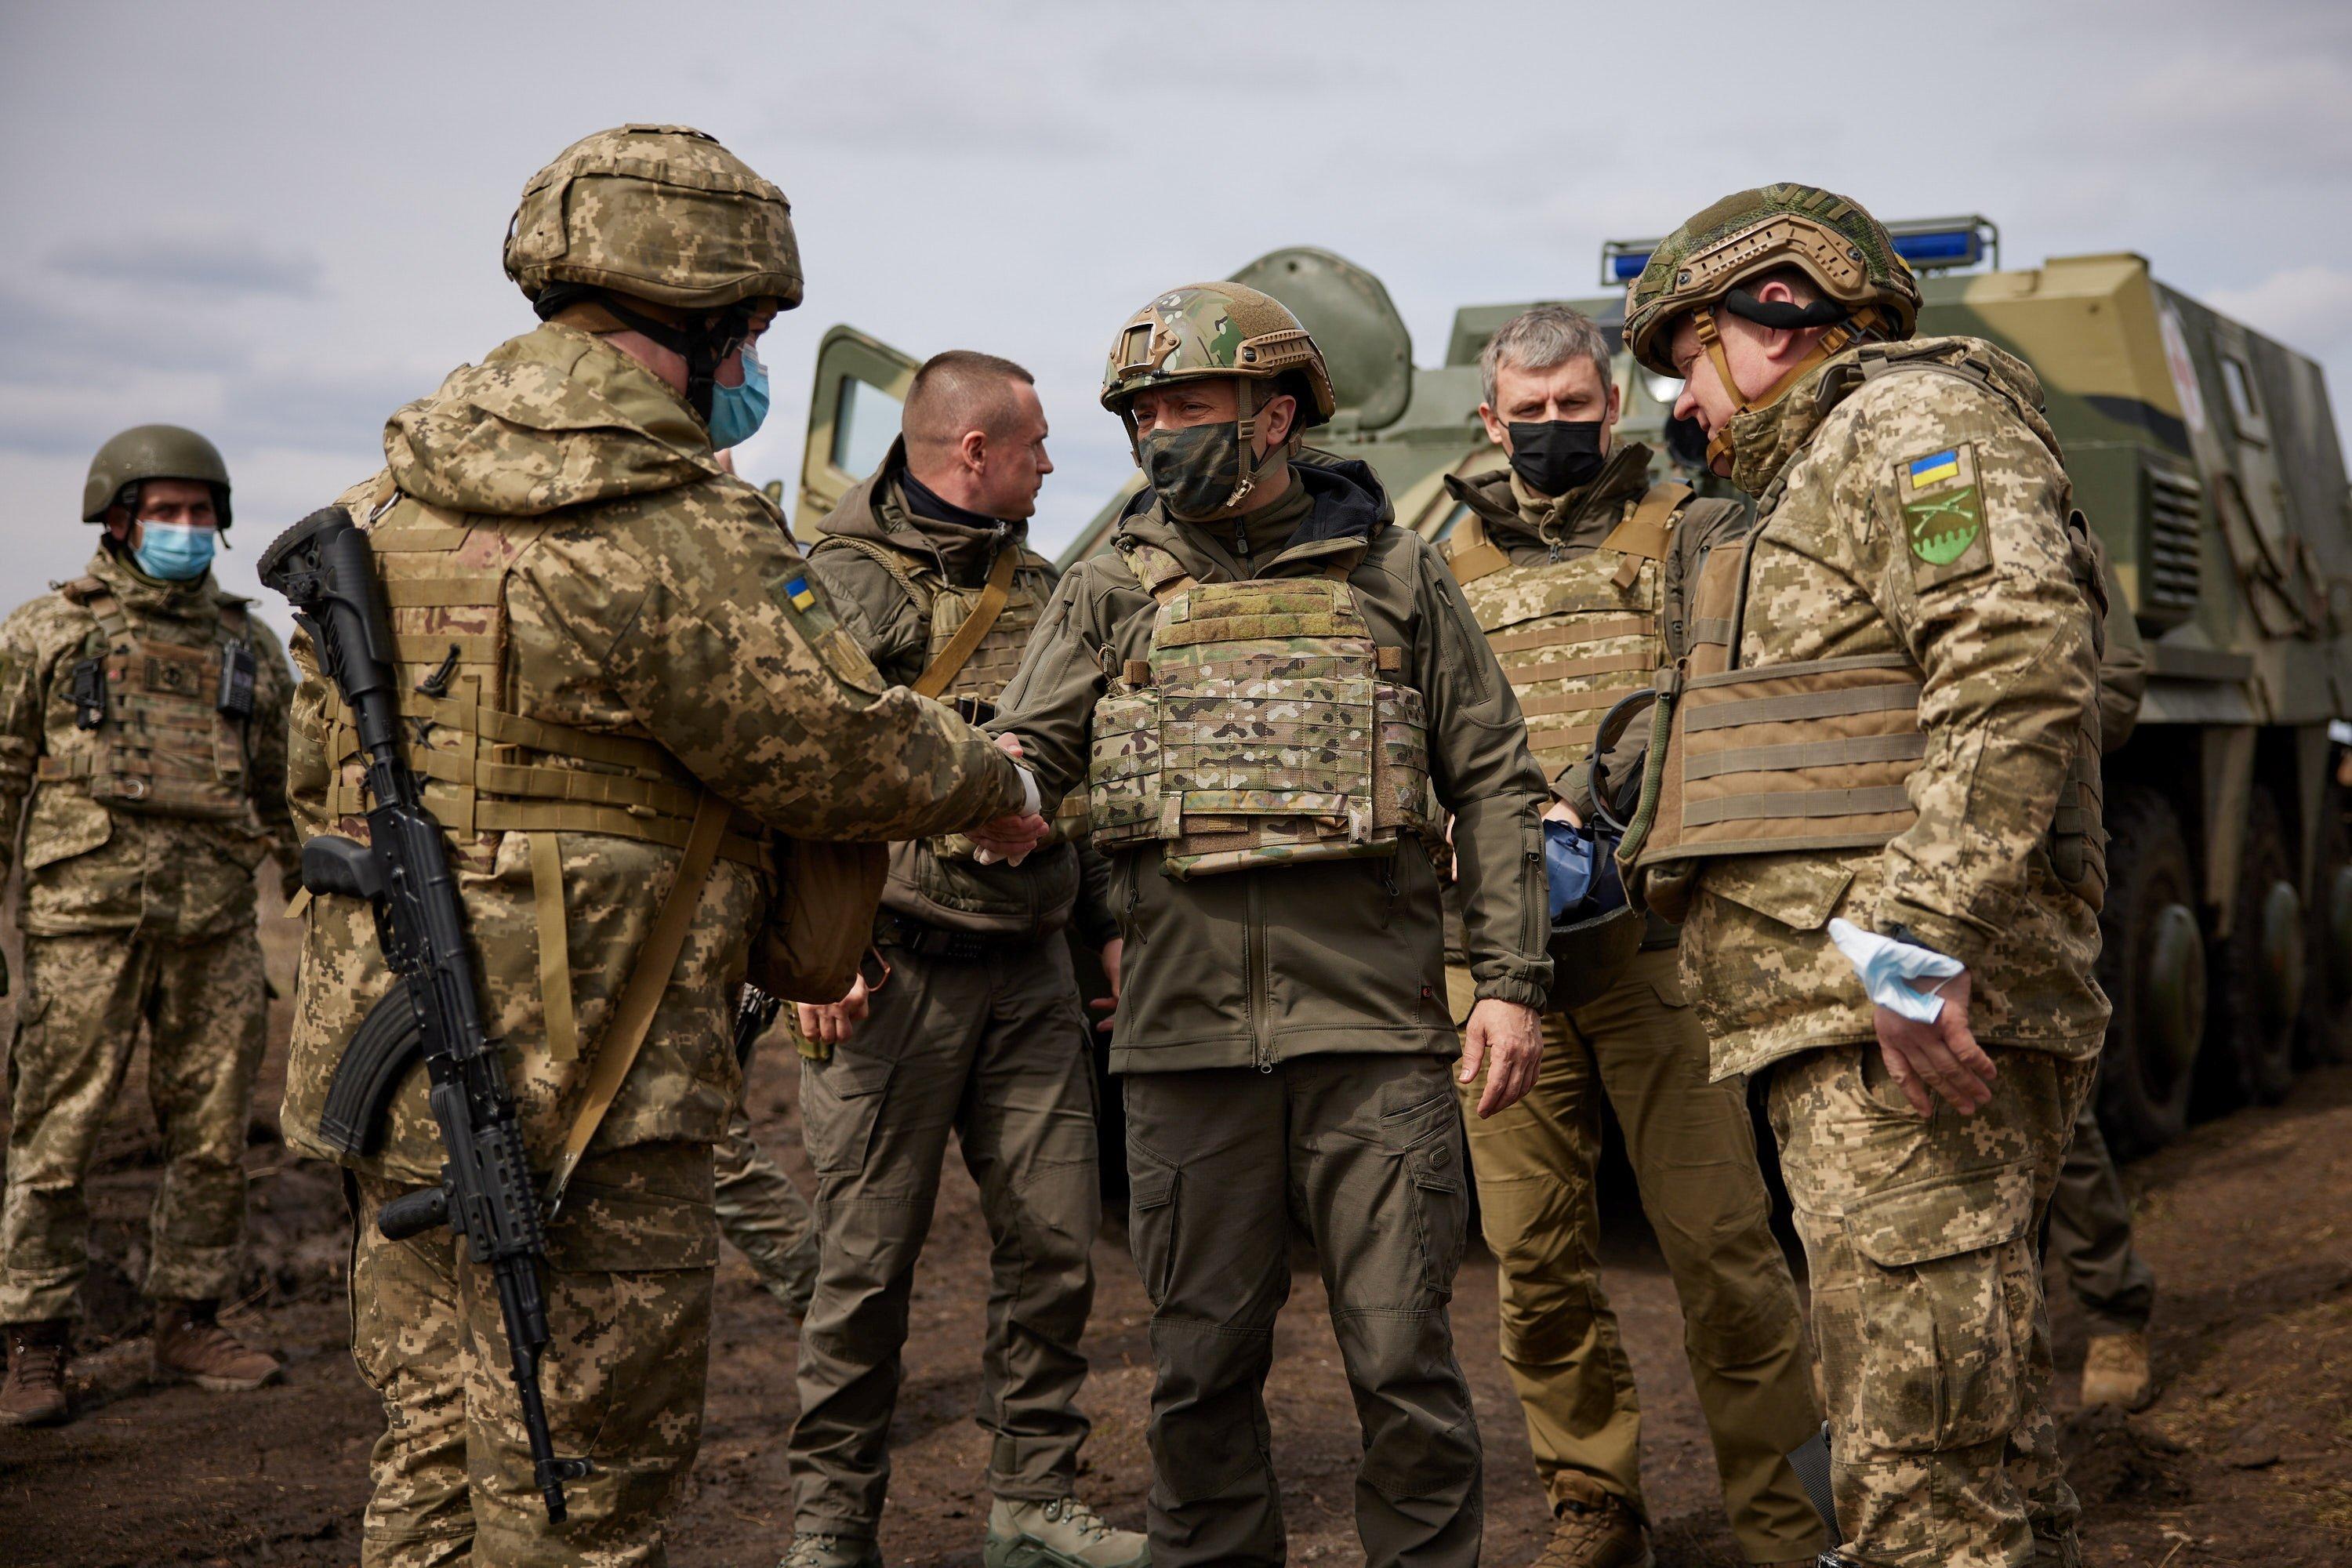 Velika Britanija opskrbljuje Ukrajinu oružjem u slučaju potrebe odbrane od Rusije